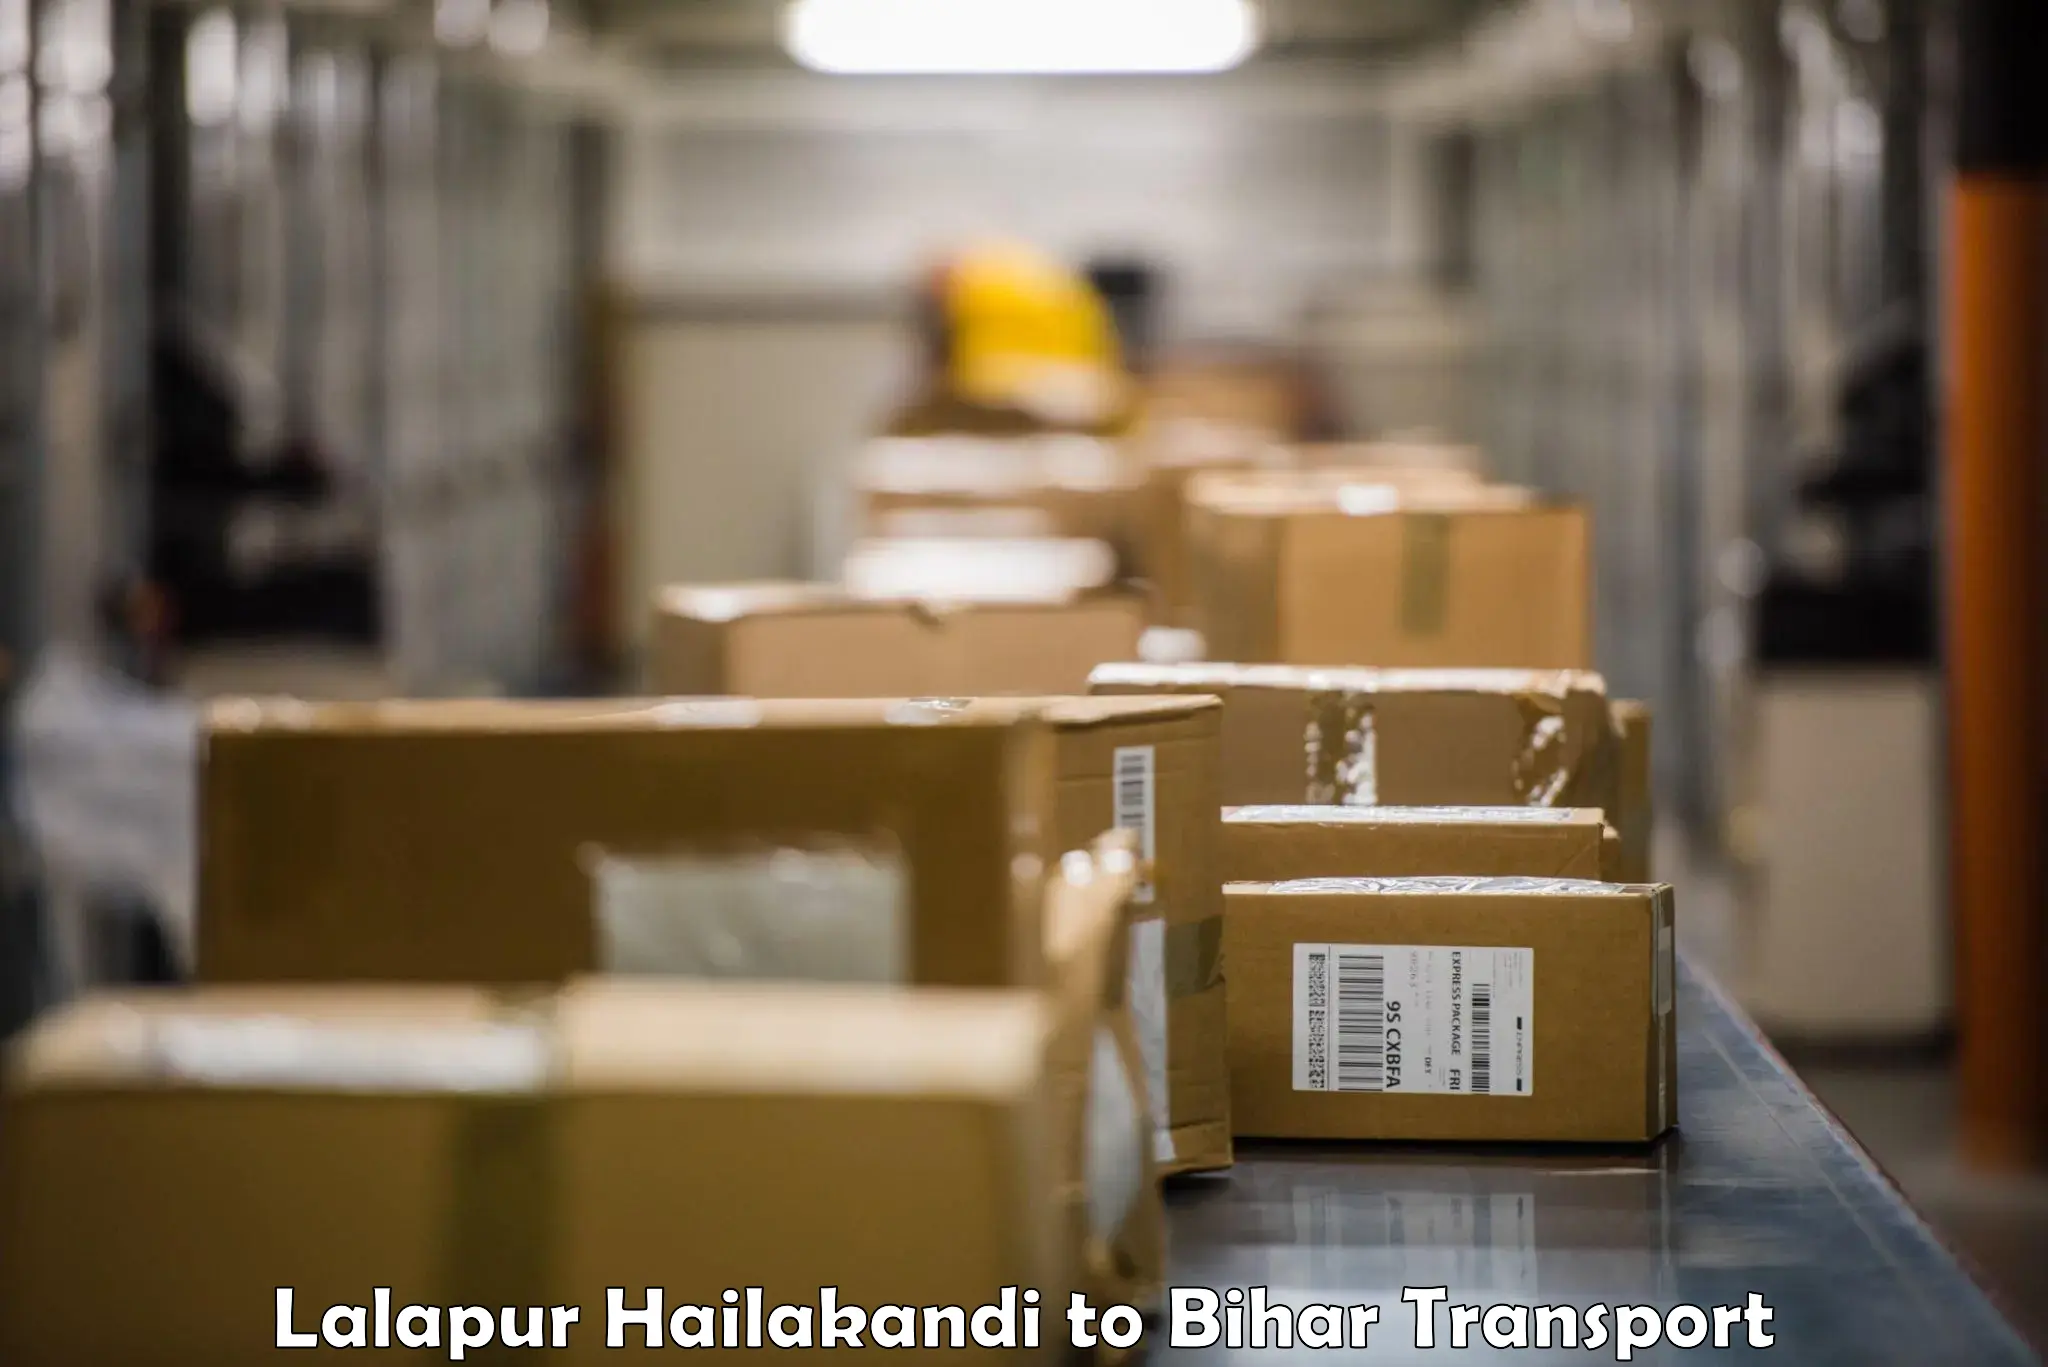 Daily transport service Lalapur Hailakandi to Ghanshyampur